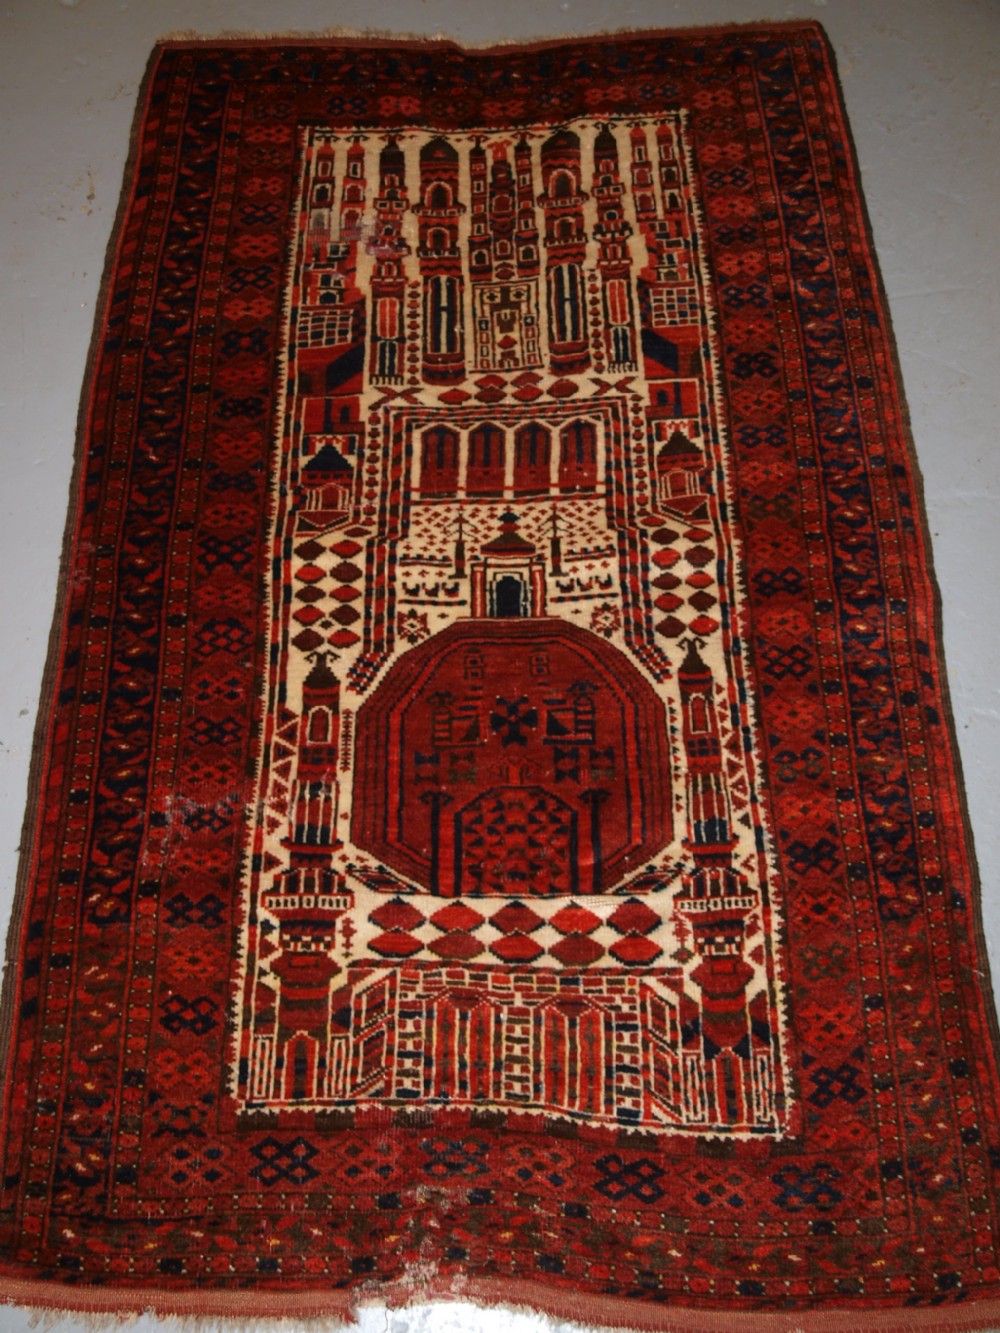 antique afghan kizil ayak mosque prayer rug circa 190020